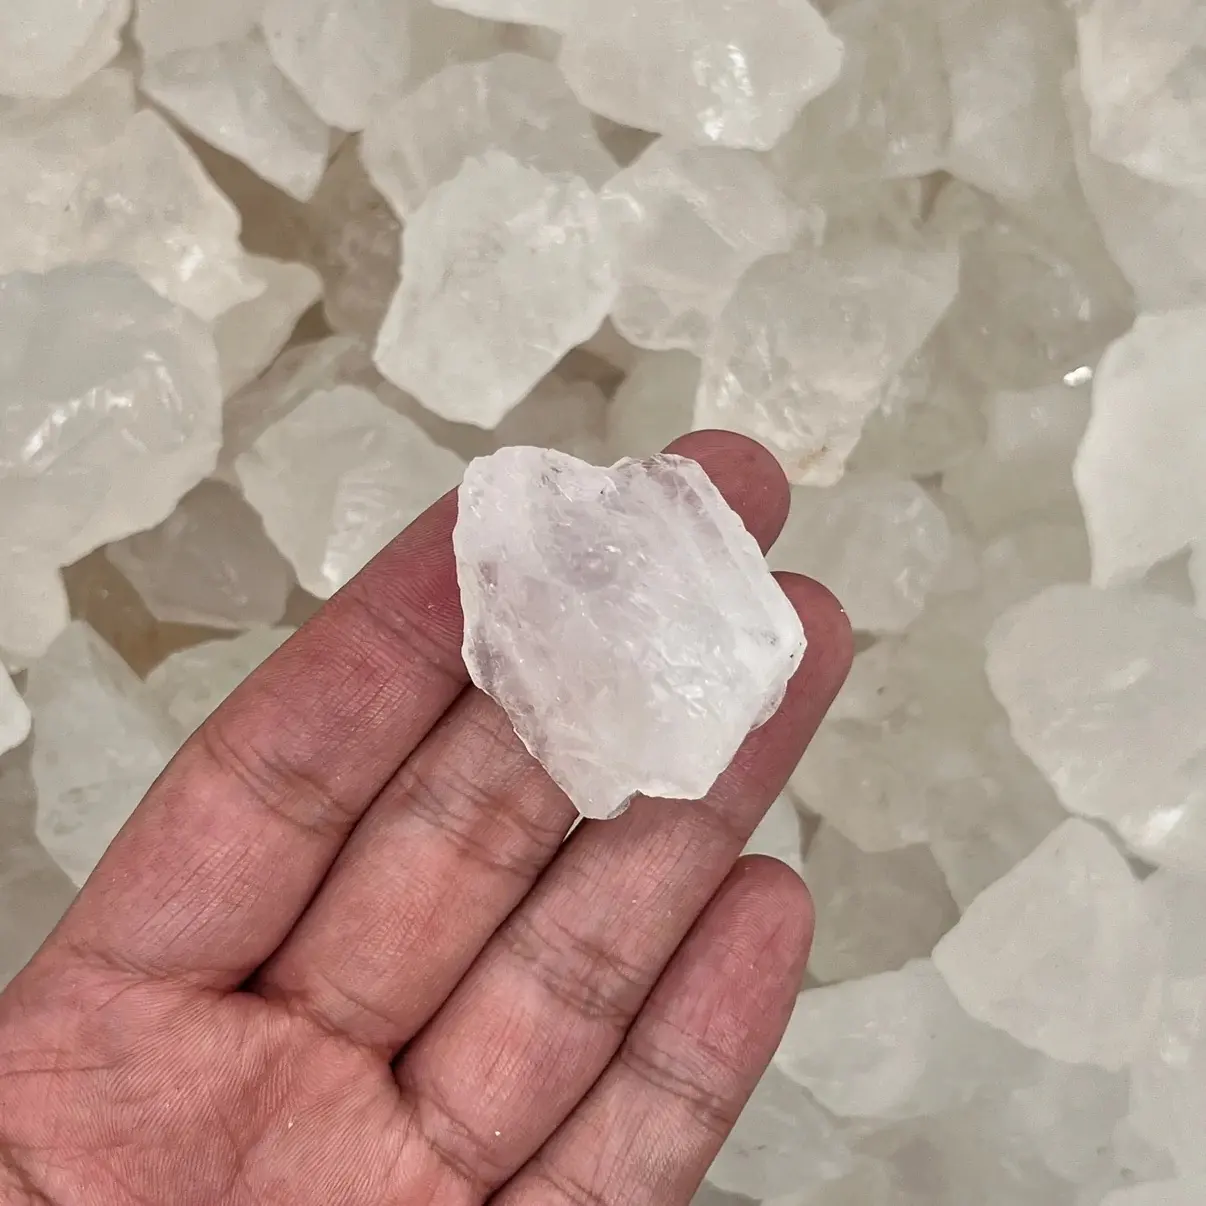 Bulk all'ingrosso gemma naturale quarzo sette Chakra guarigione grezza ghiaie bianco chiaro cristallo di roccia burattato pietra preziosa Reiki grezzo